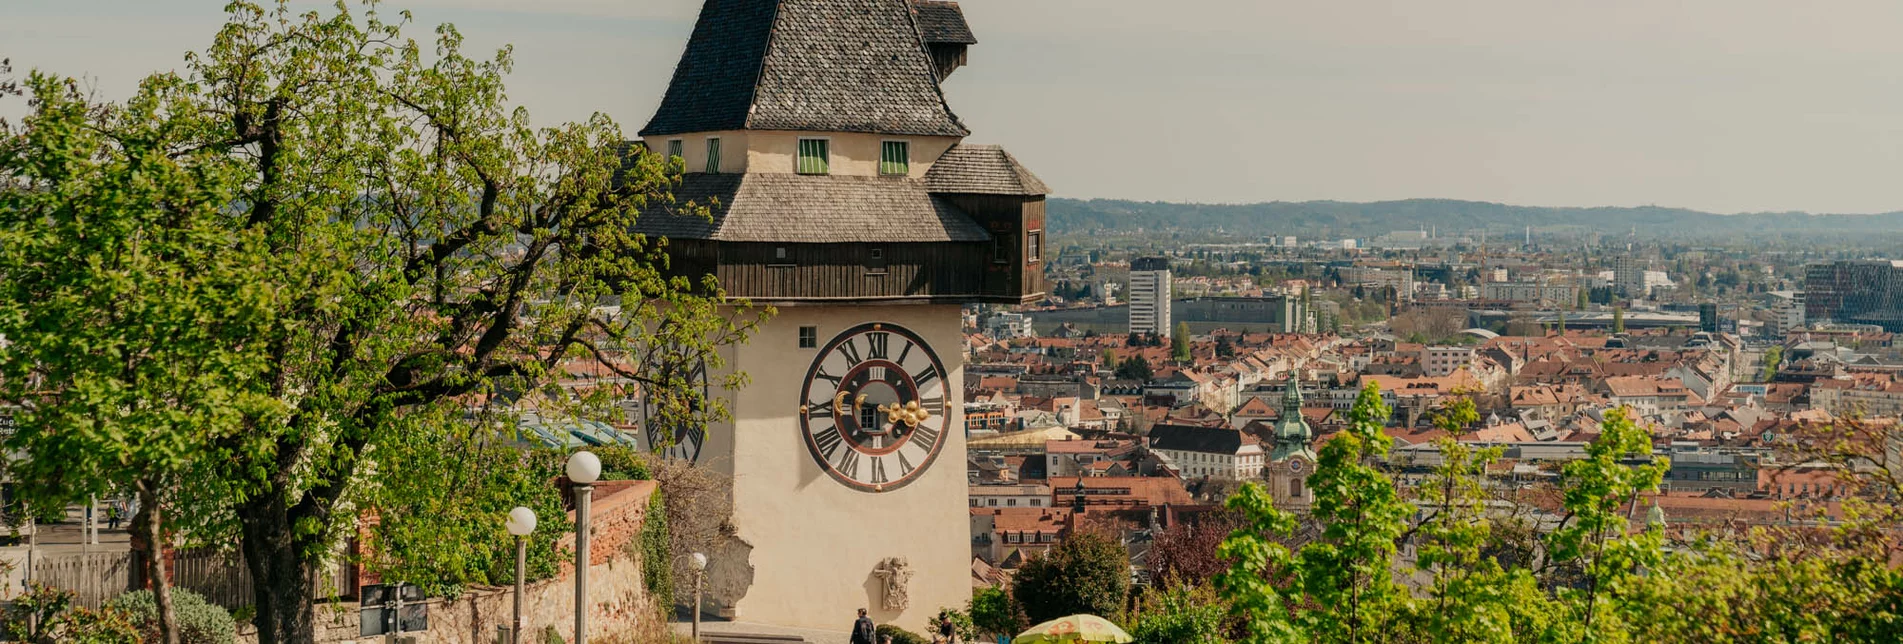 der Grazer Uhrturm | © Region Graz | studio draussen